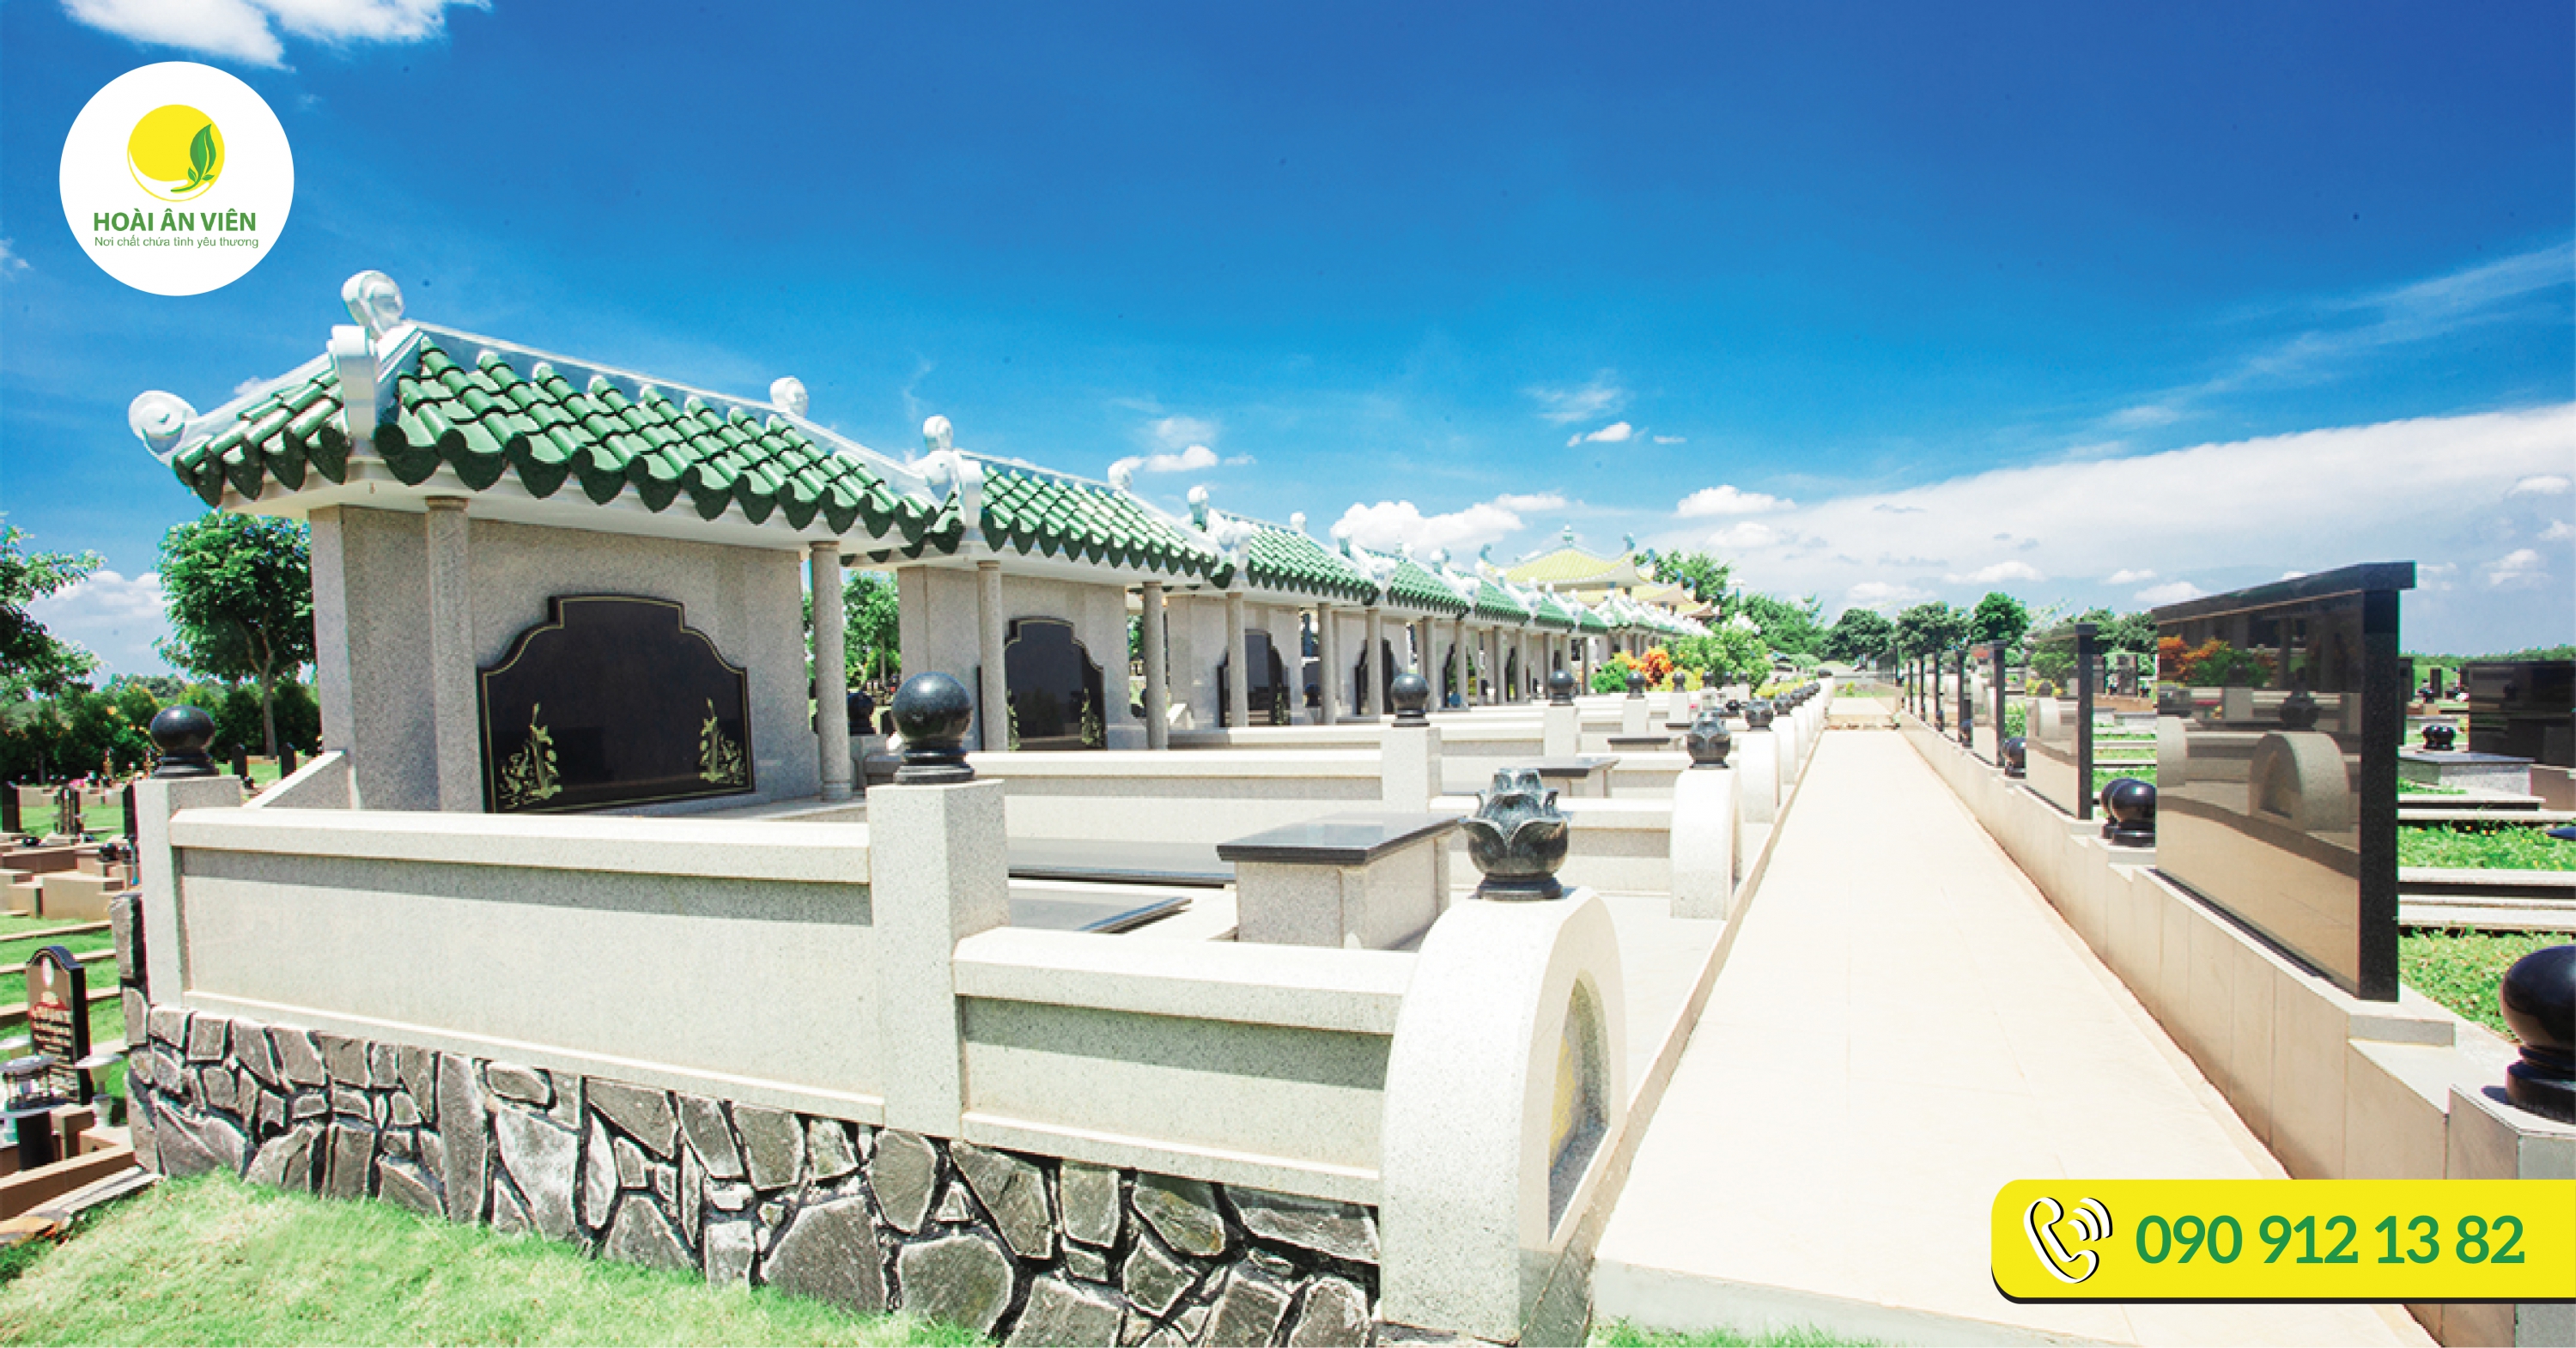 Hoài Ân Viên top 3 công viên nghĩa trang có kiến trúc mộ đẹp nhất Việt Nam